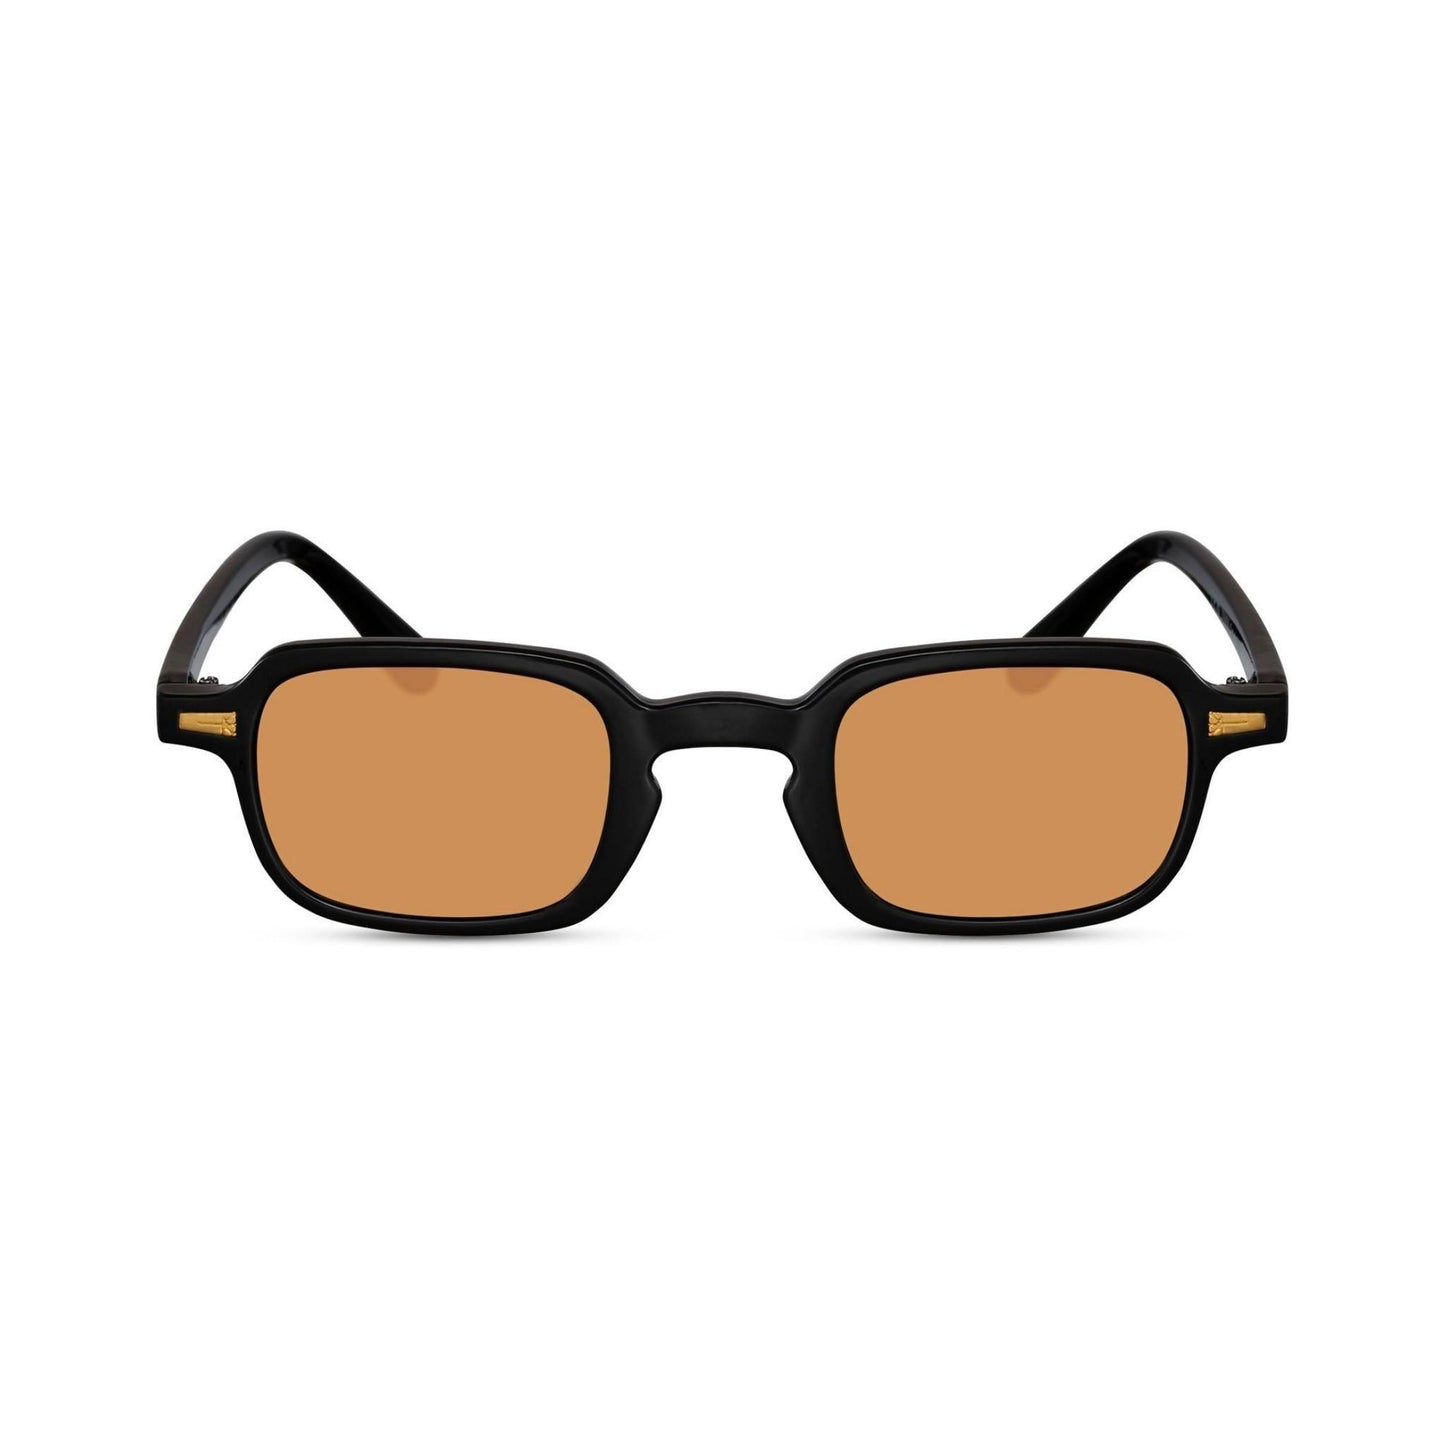 Τετράγωνα Γυαλιά Ηλίου Luminous της Exposure Sunglasses με προστασία UV400 με  μαύρο σκελετό και πορτοκαλί φακό.